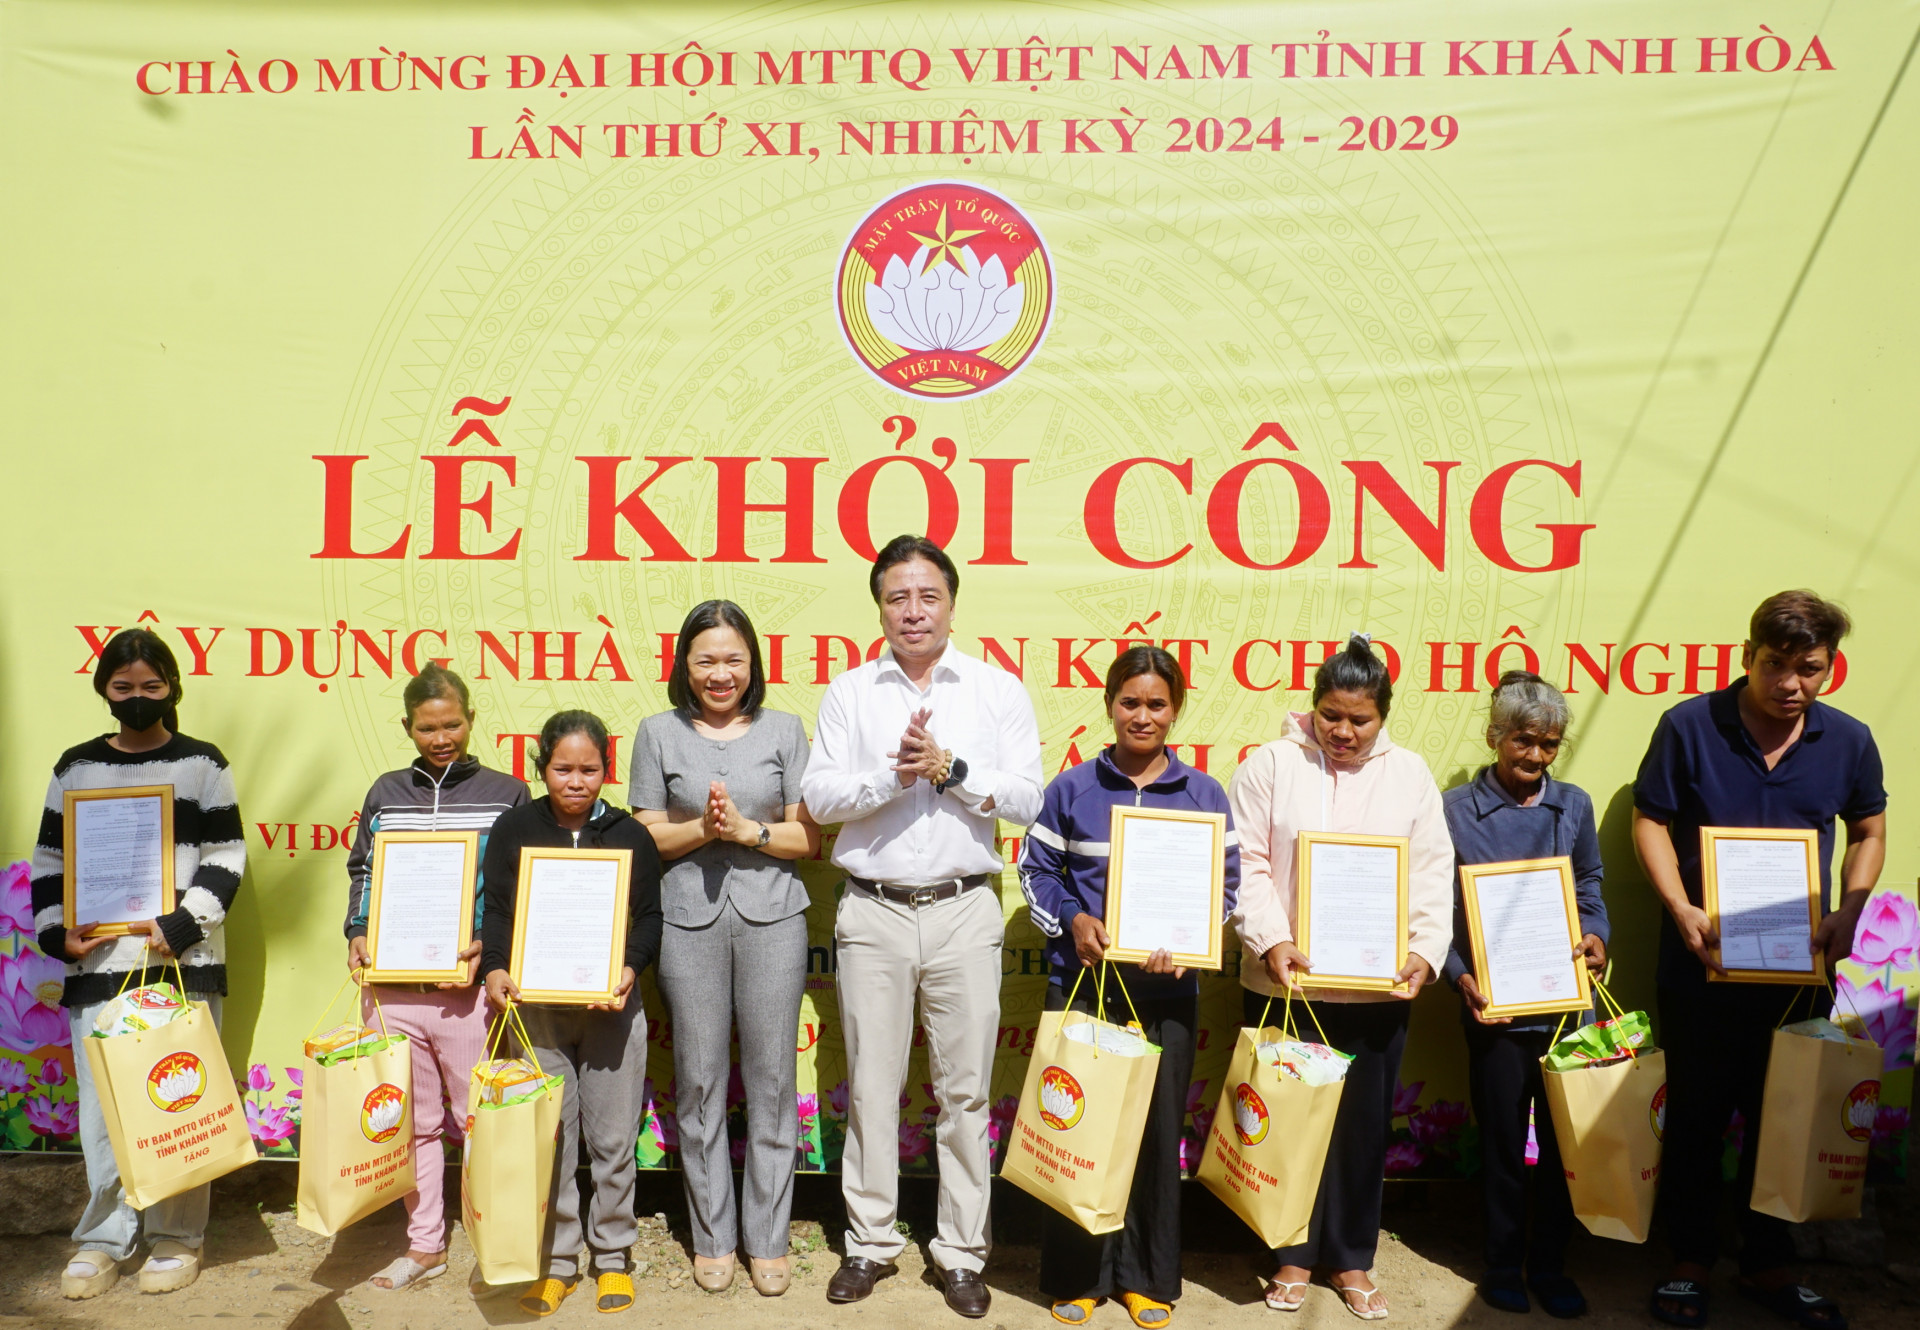 Ông Nguyễn Khắc Toàn và bà Trần Thu Mai trao quyết định tặng nhà Đại đoàn kết cho hộ nghèo xã Sơn Trung